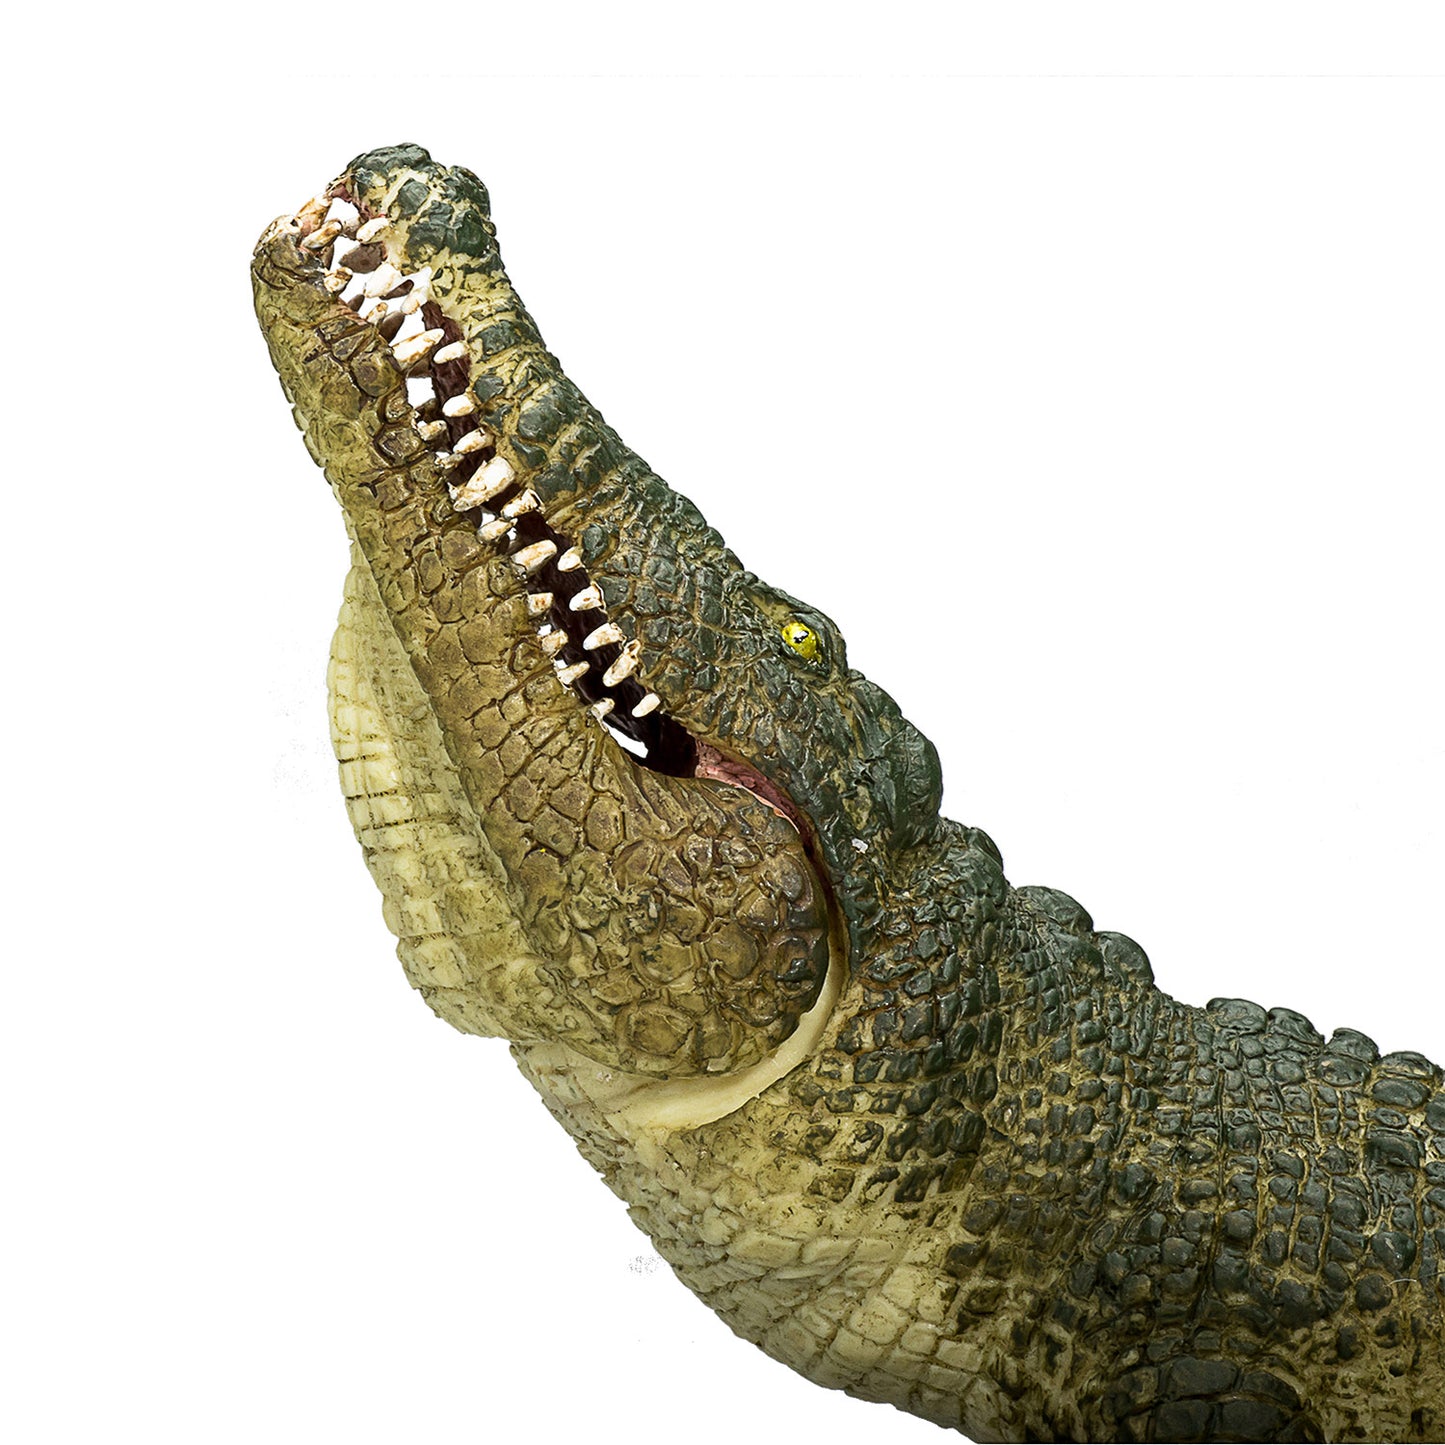 Mojo Wildlife Crocodile con mascella in movimento 387162